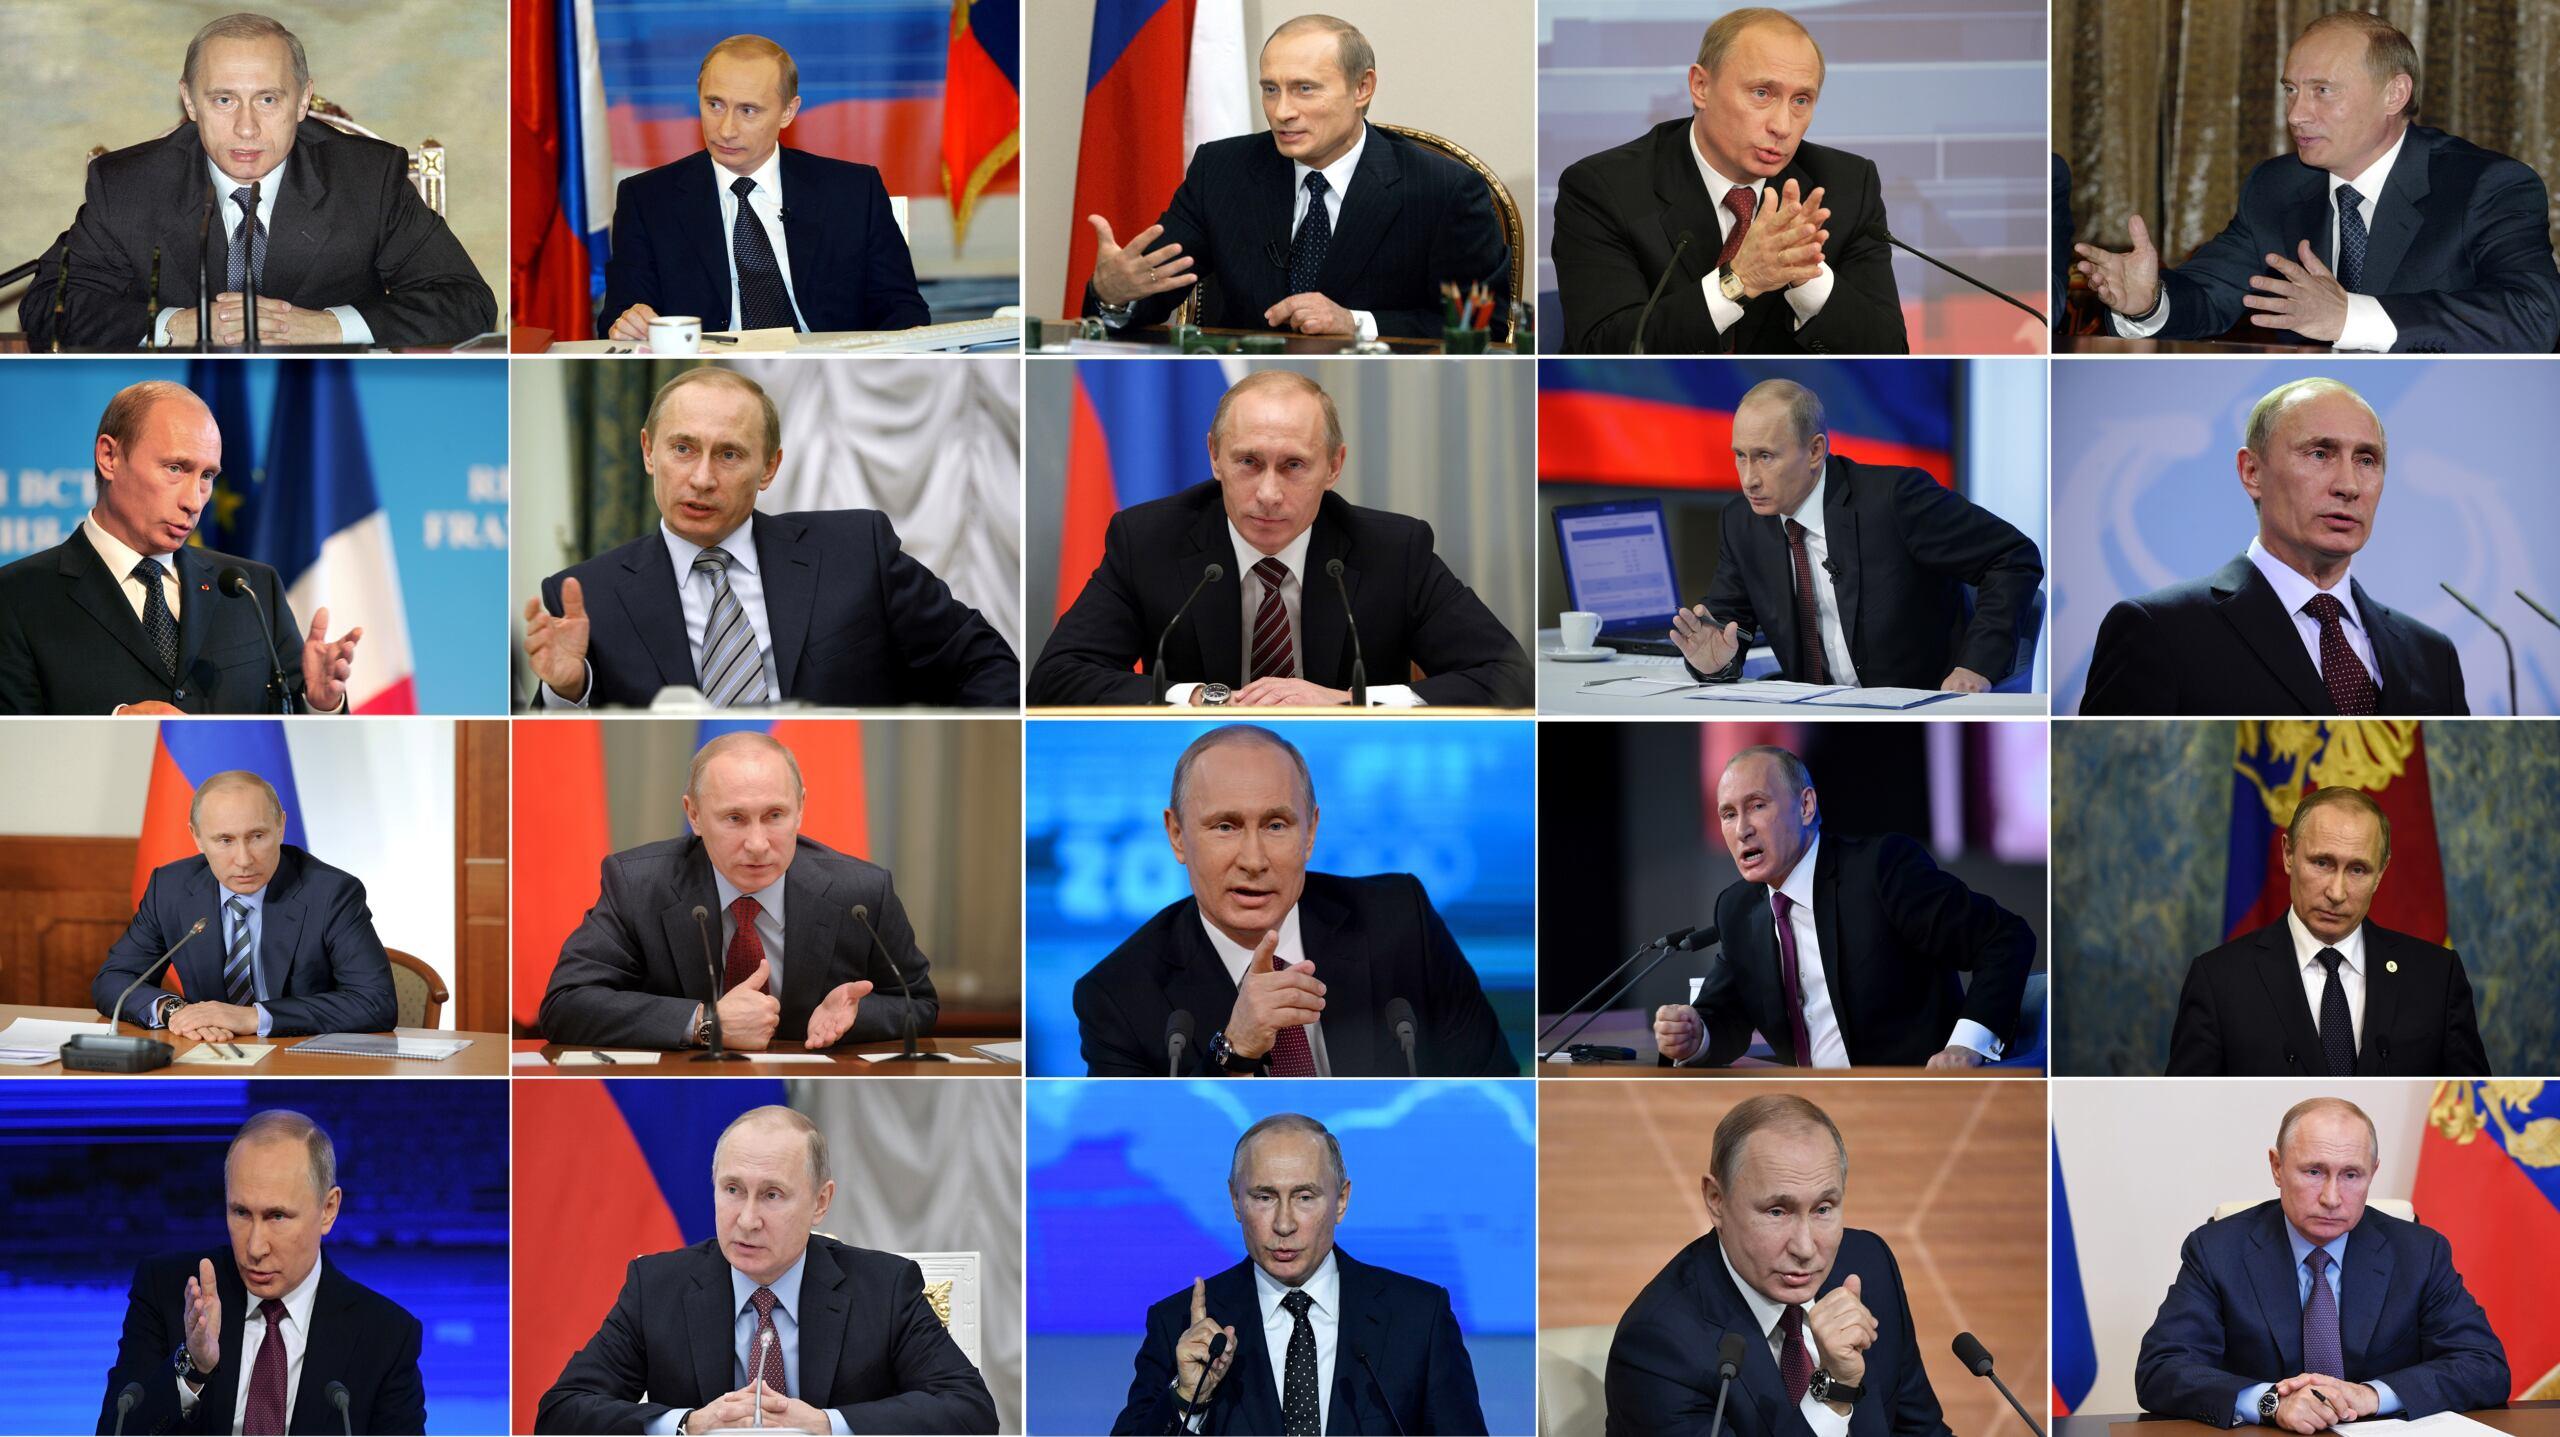 Ekran z wieloma podobiznami Putina